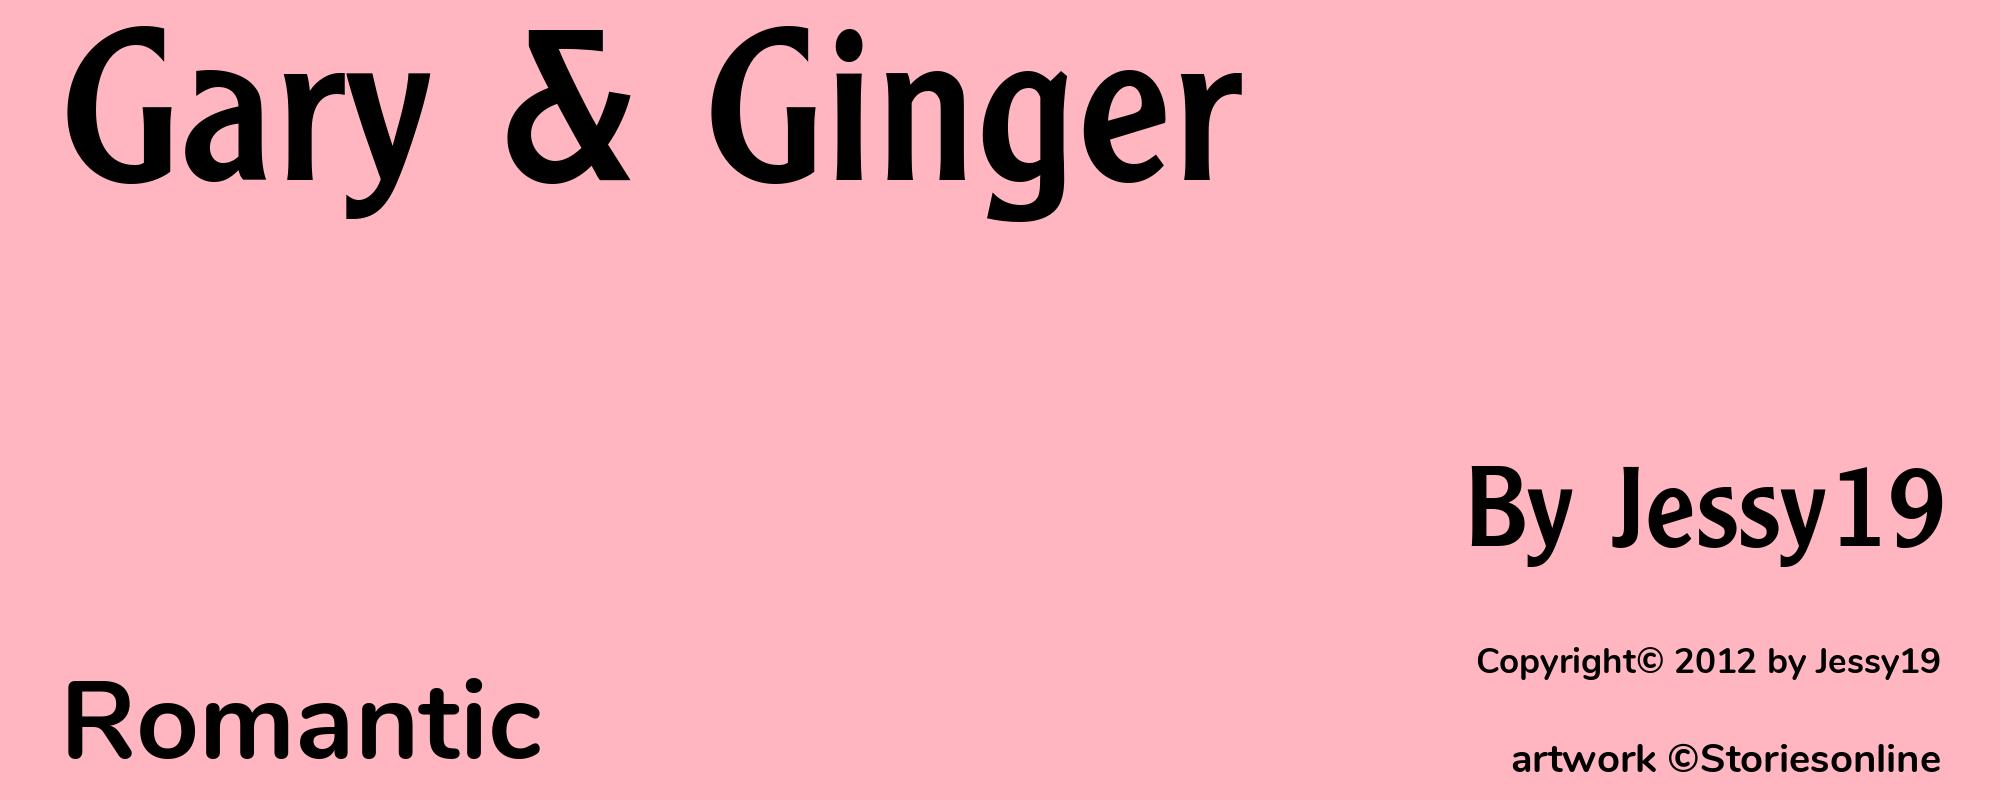 Gary & Ginger - Cover